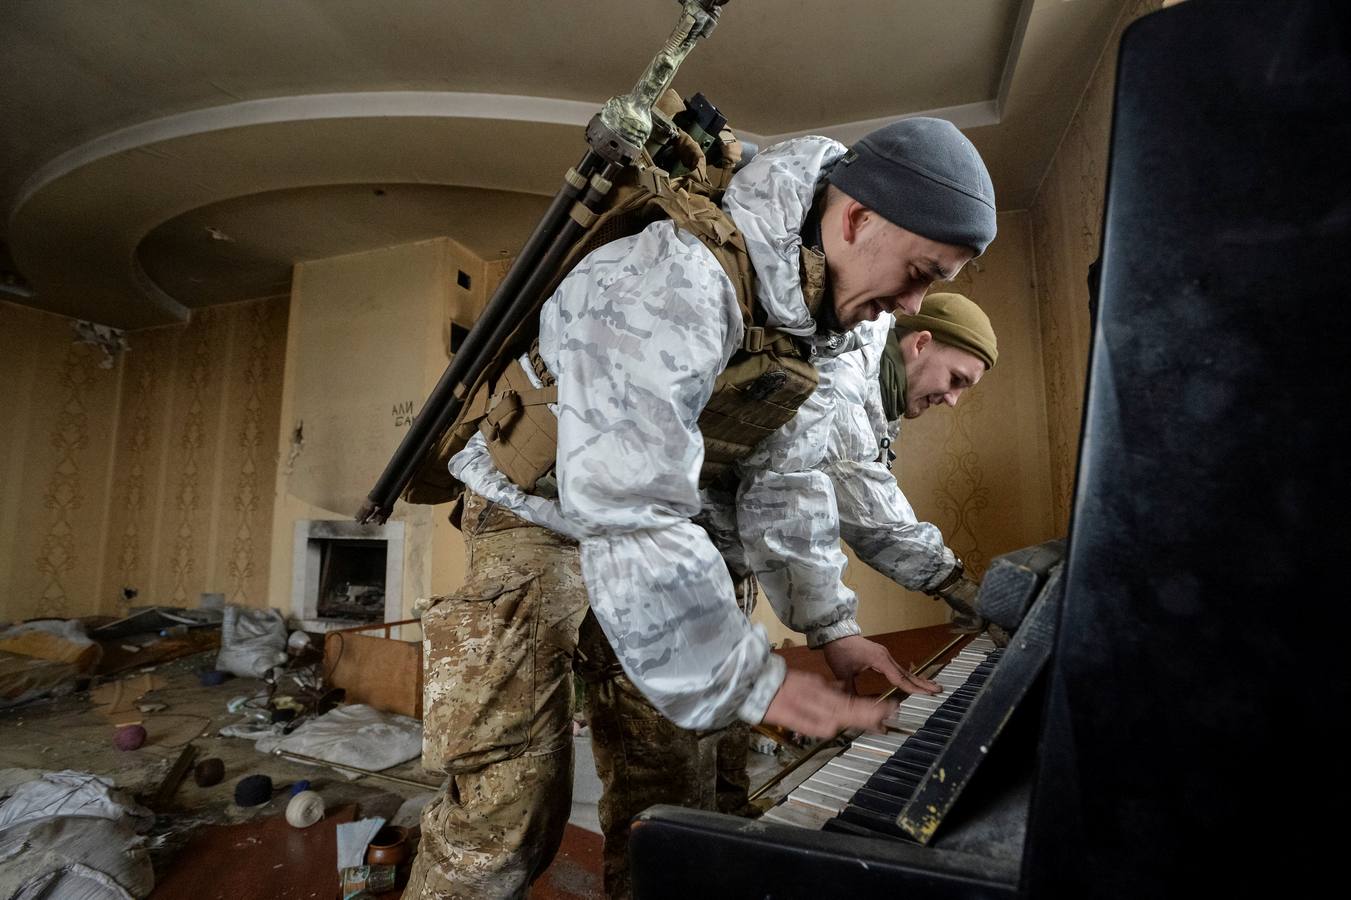 Los miembros de las Fuerzas Armadas de Ucrania tocan el piano. Casa destruida cerca de su posición en la línea del frente en la región de Donetsk, Ucrania, 4 de febrero.